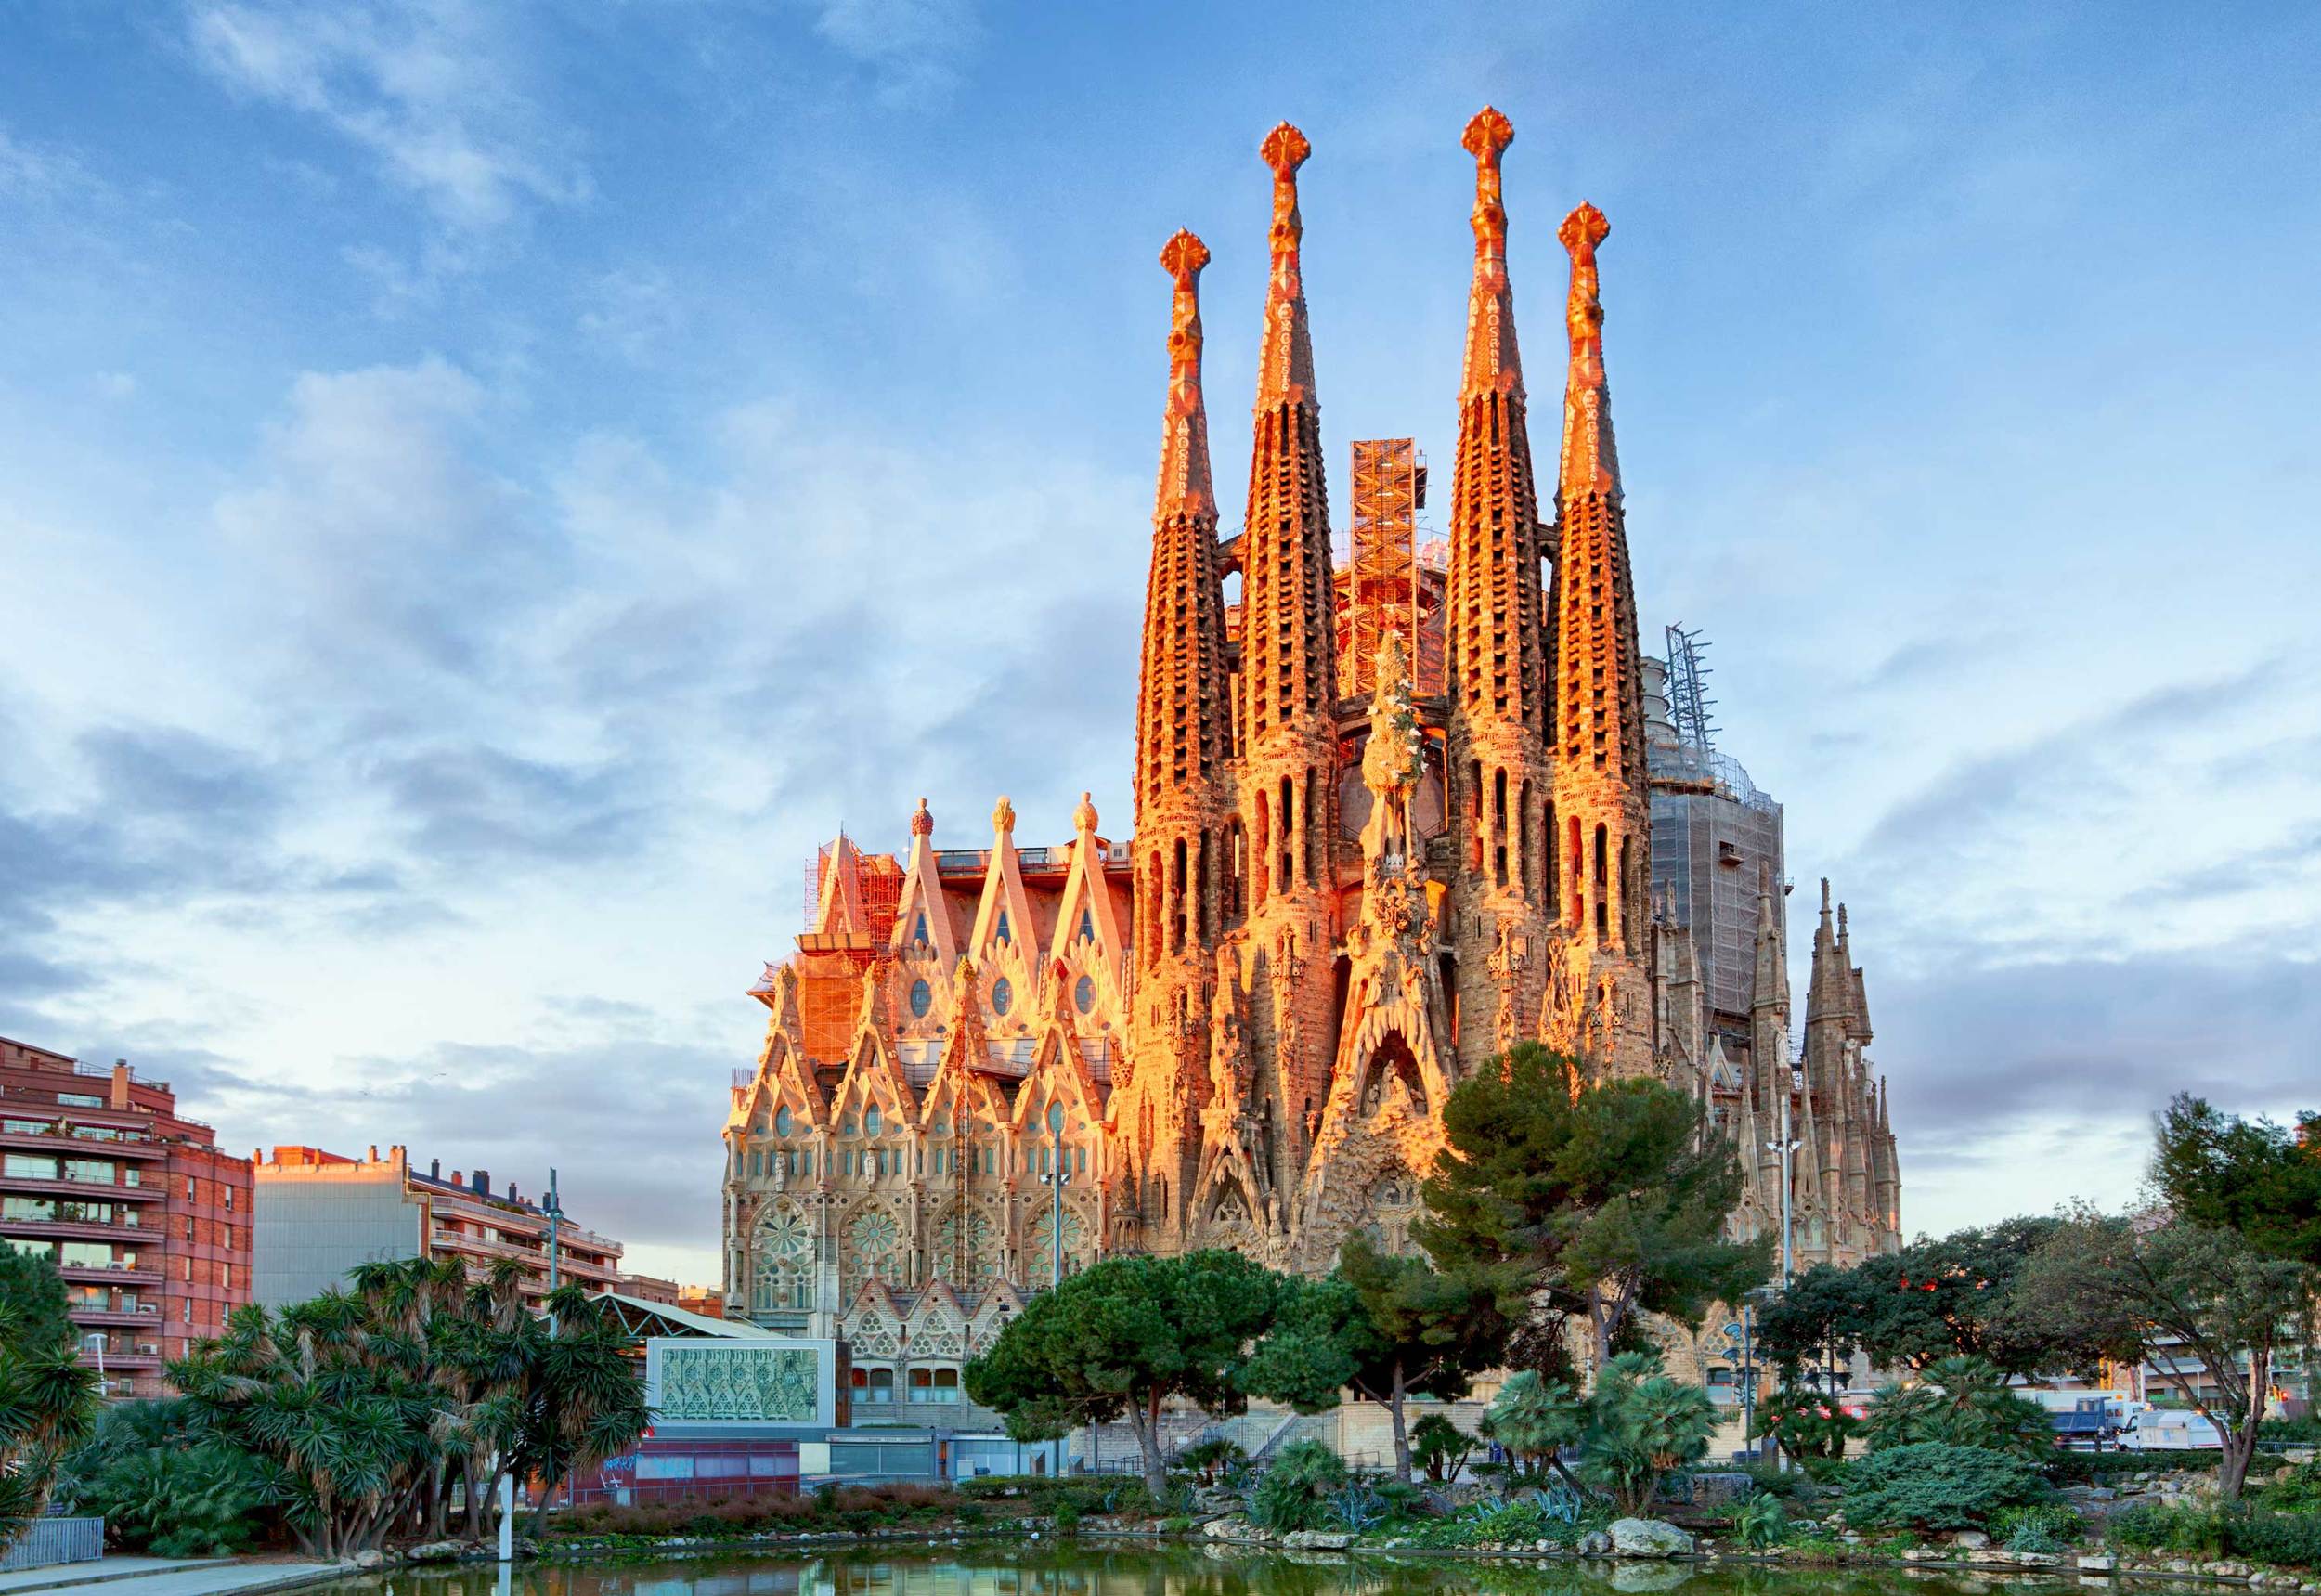 The Basílica i Temple Expiatori de la Sagrada Família, otherwise known as Sagrada Família